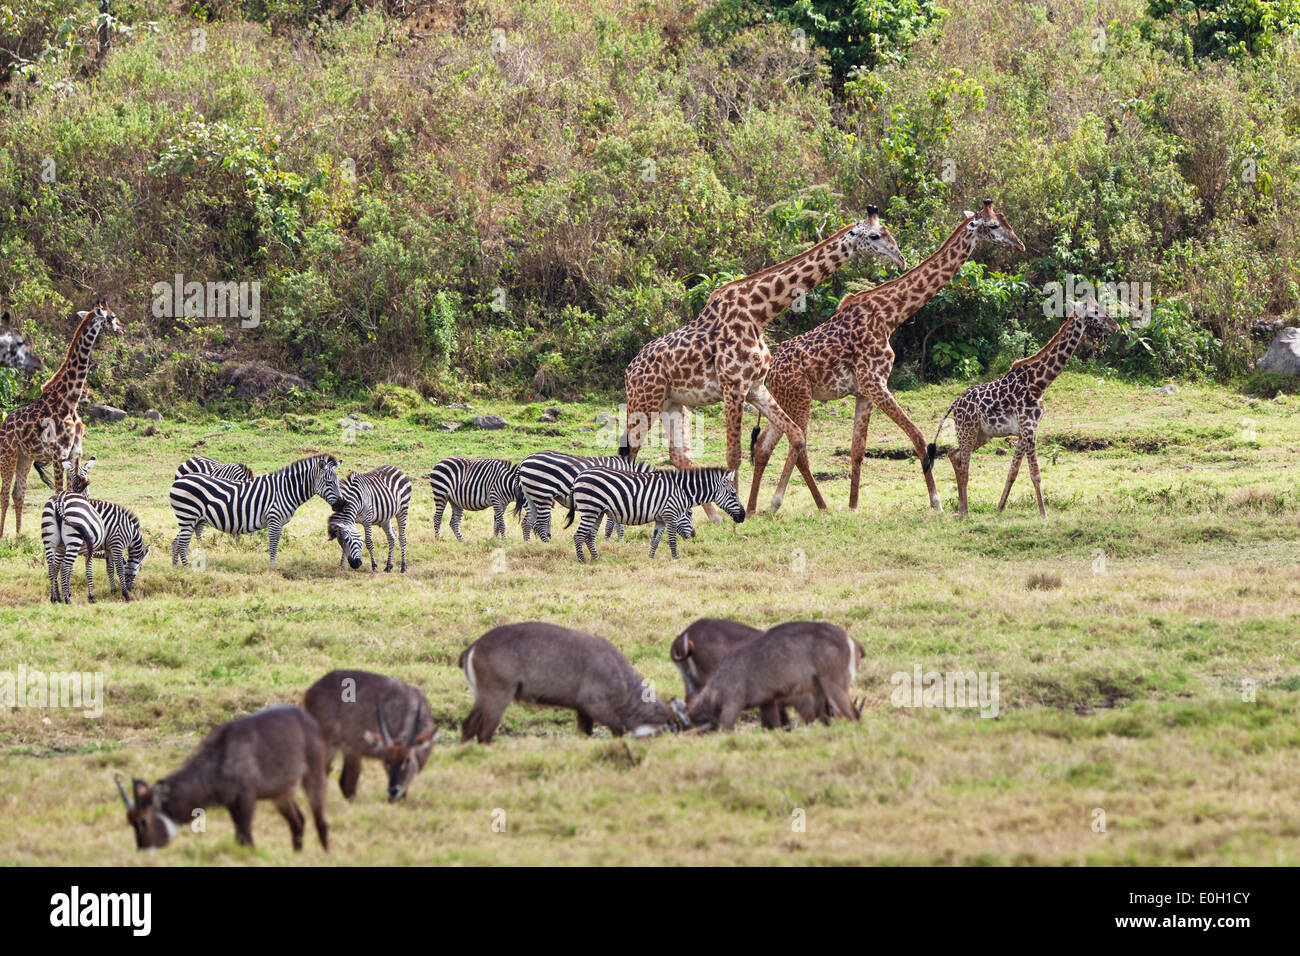 Les Girafes Massai, Giraffa camelopardalis, zèbres et waterbucks, Parc National d'Arusha, Tanzanie, Afrique orientale, Afrique du Sud Banque D'Images